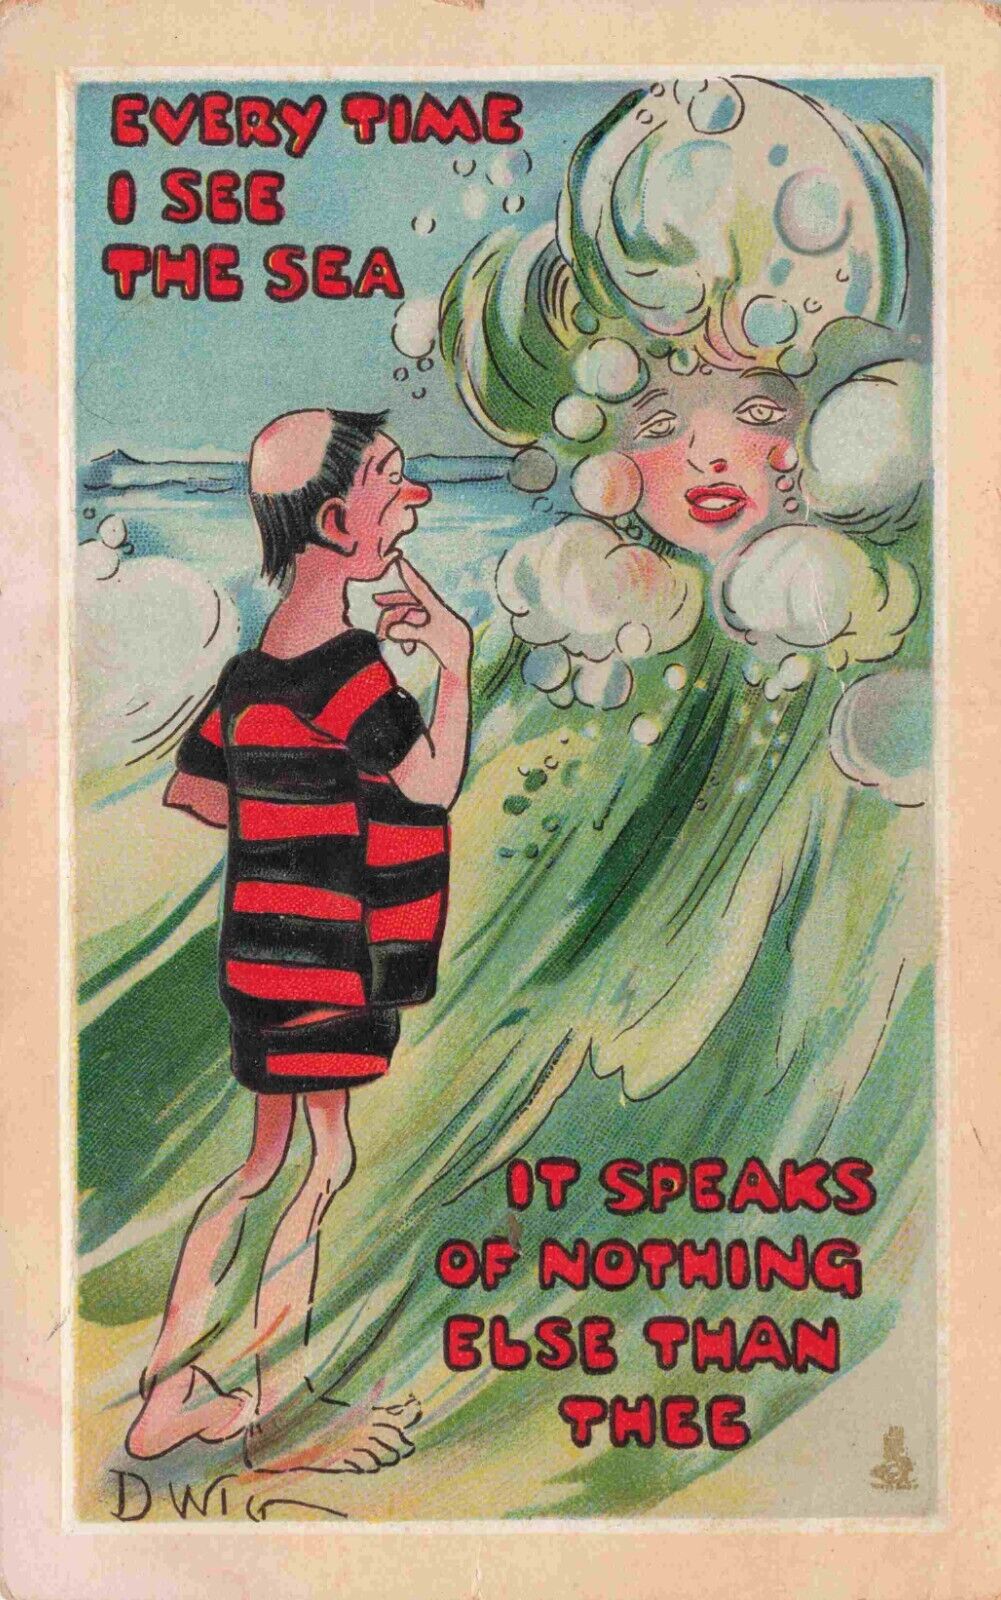 Fantasy Woman in Waves Artist D Wig Tucks Everytime Series 182 Vintage Postcard